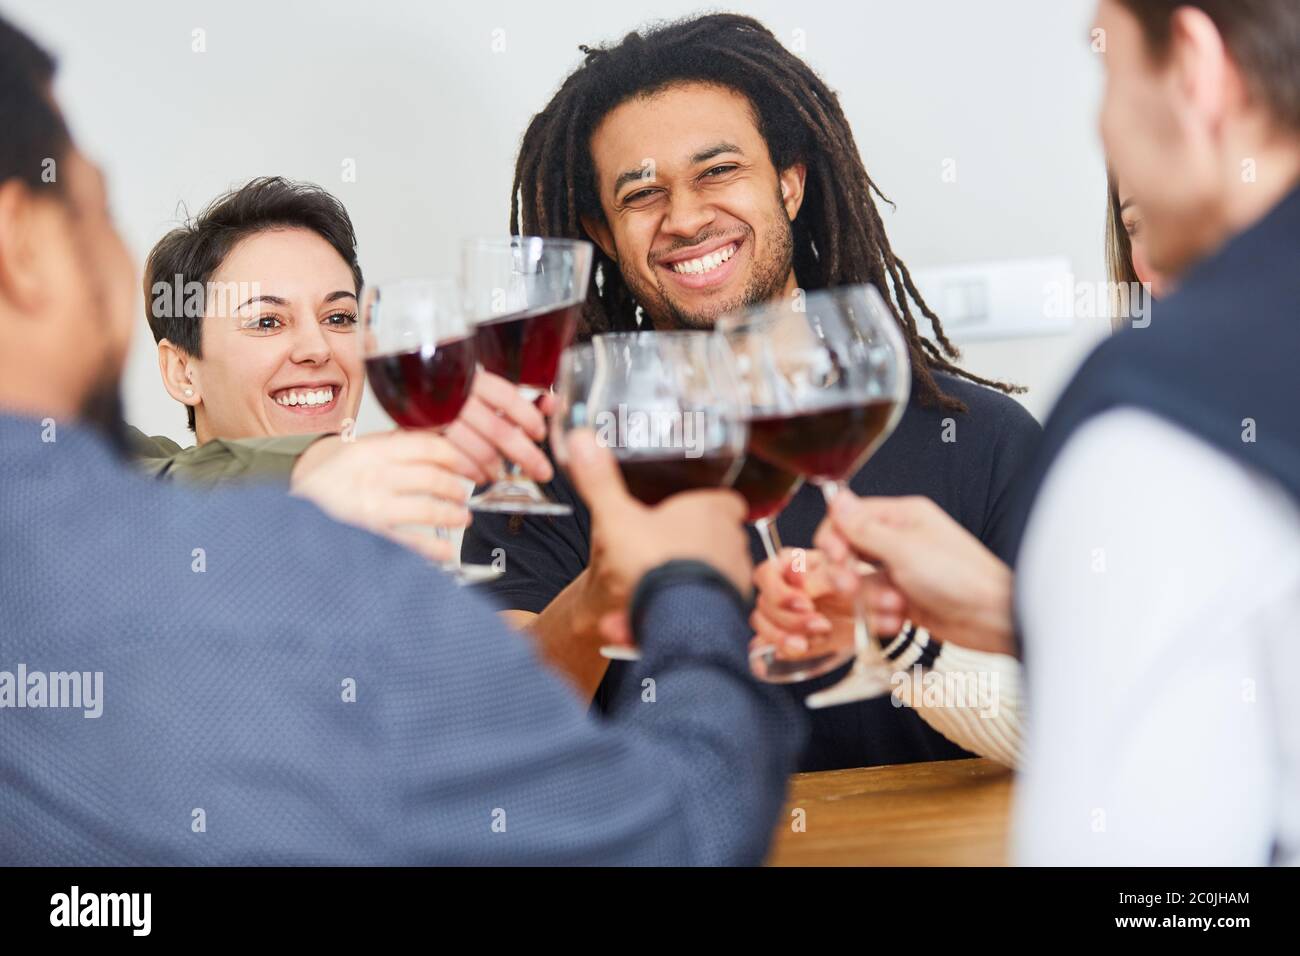 Un groupe d'amis heureux se fait griller avec un verre de vin rouge à la maison Banque D'Images